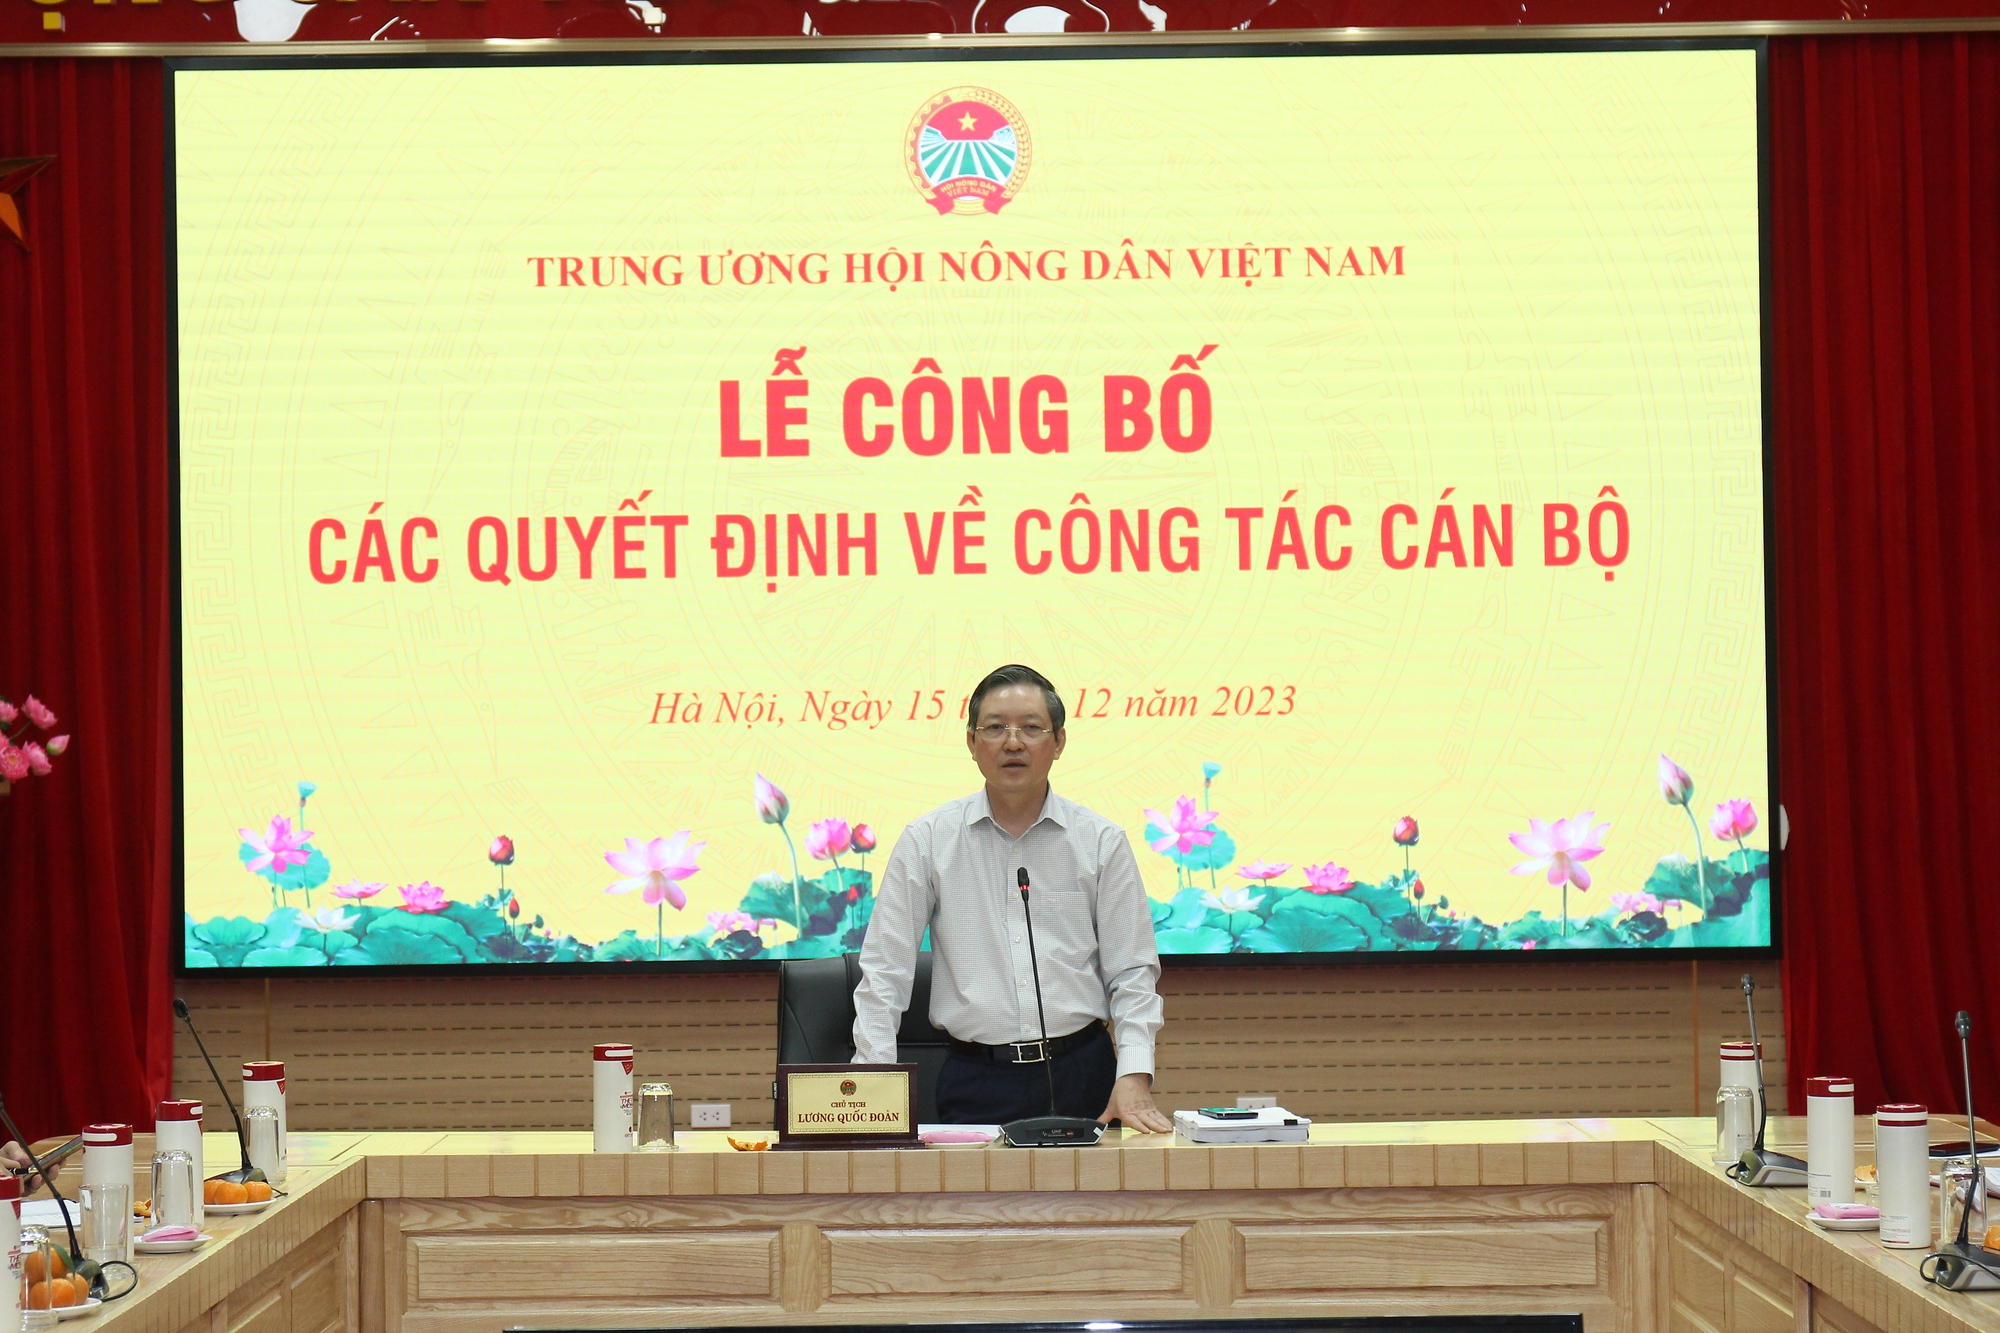 Trung ương Hội Nông dân Việt Nam trao Quyết định về công tác cán bộ cho 6 đồng chí - Ảnh 2.